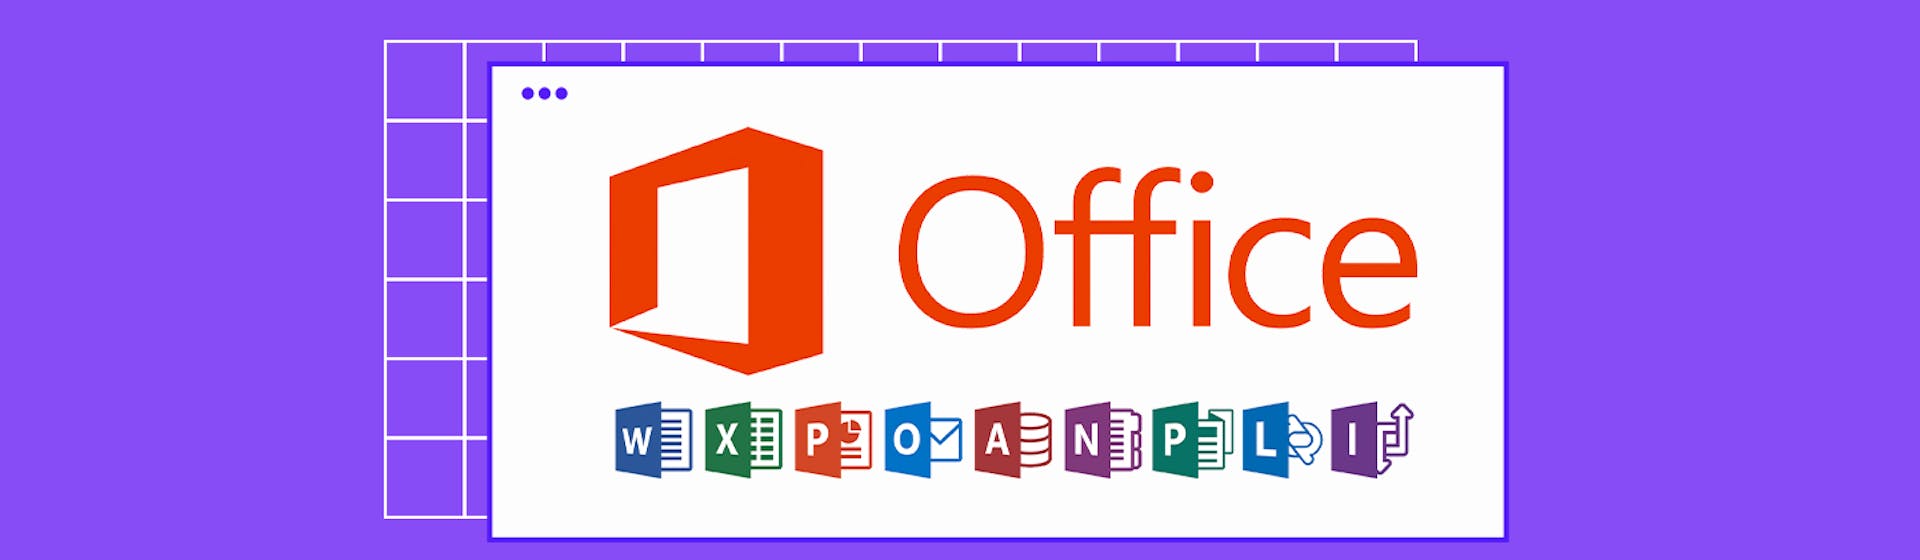 ¿Qué es Microsoft Office? Las herramientas para el trabajo colaborativo